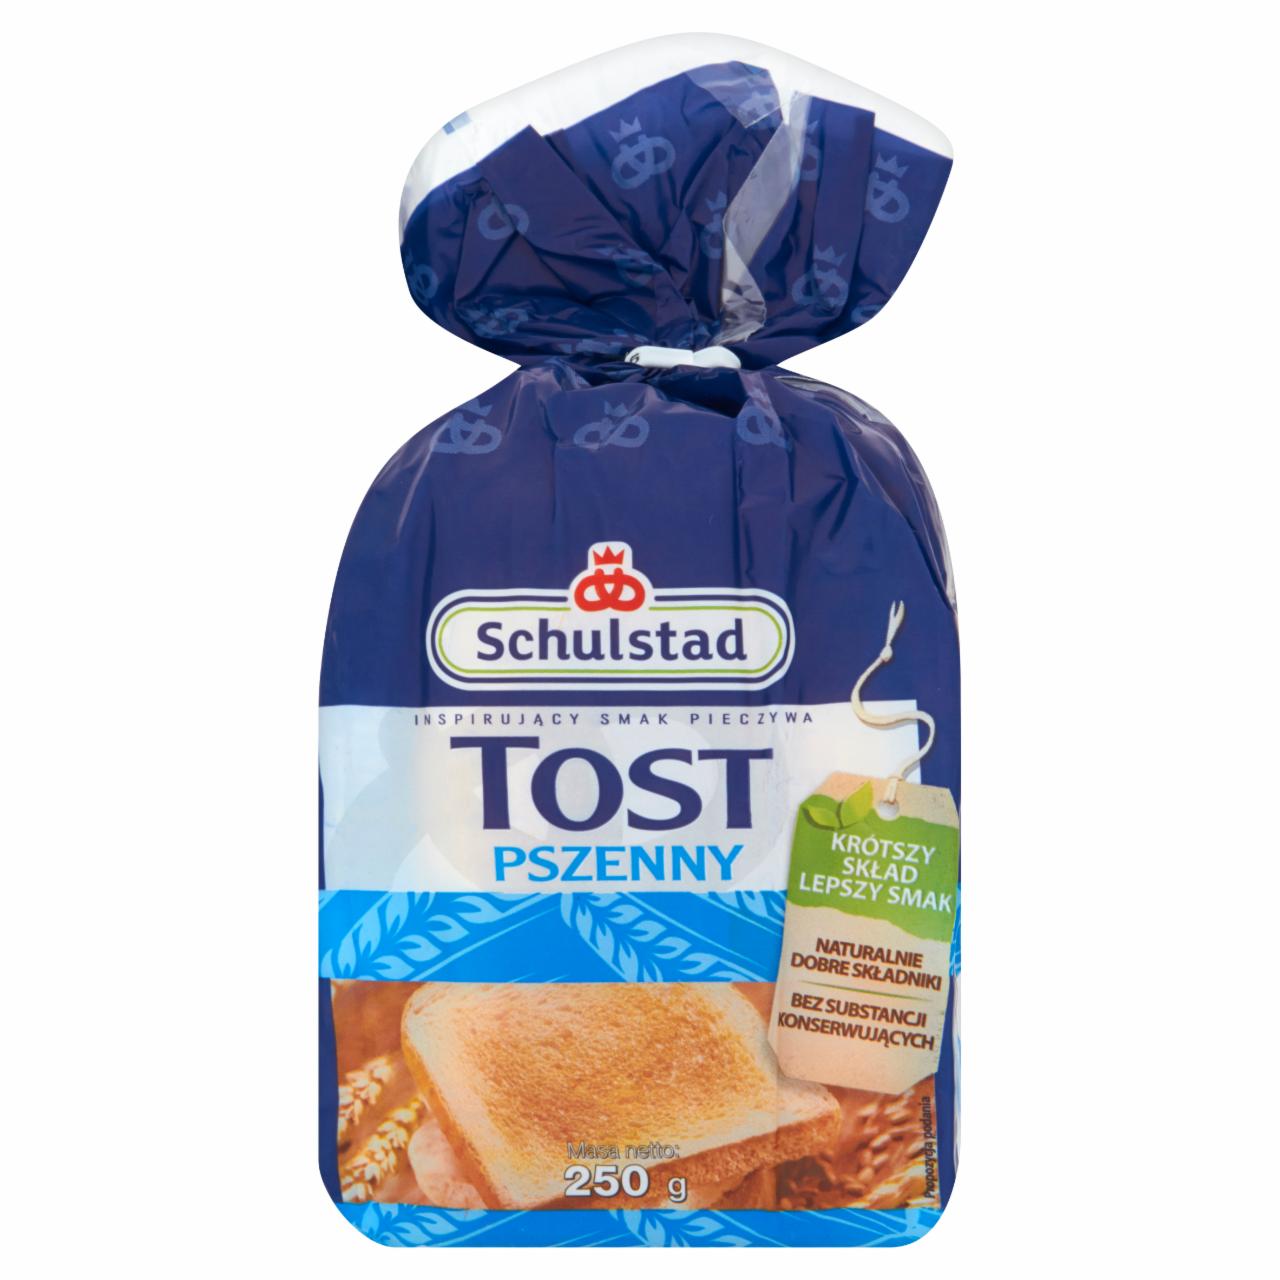 Zdjęcia - Schulstad Tost pszenny Chleb tostowy 250 g